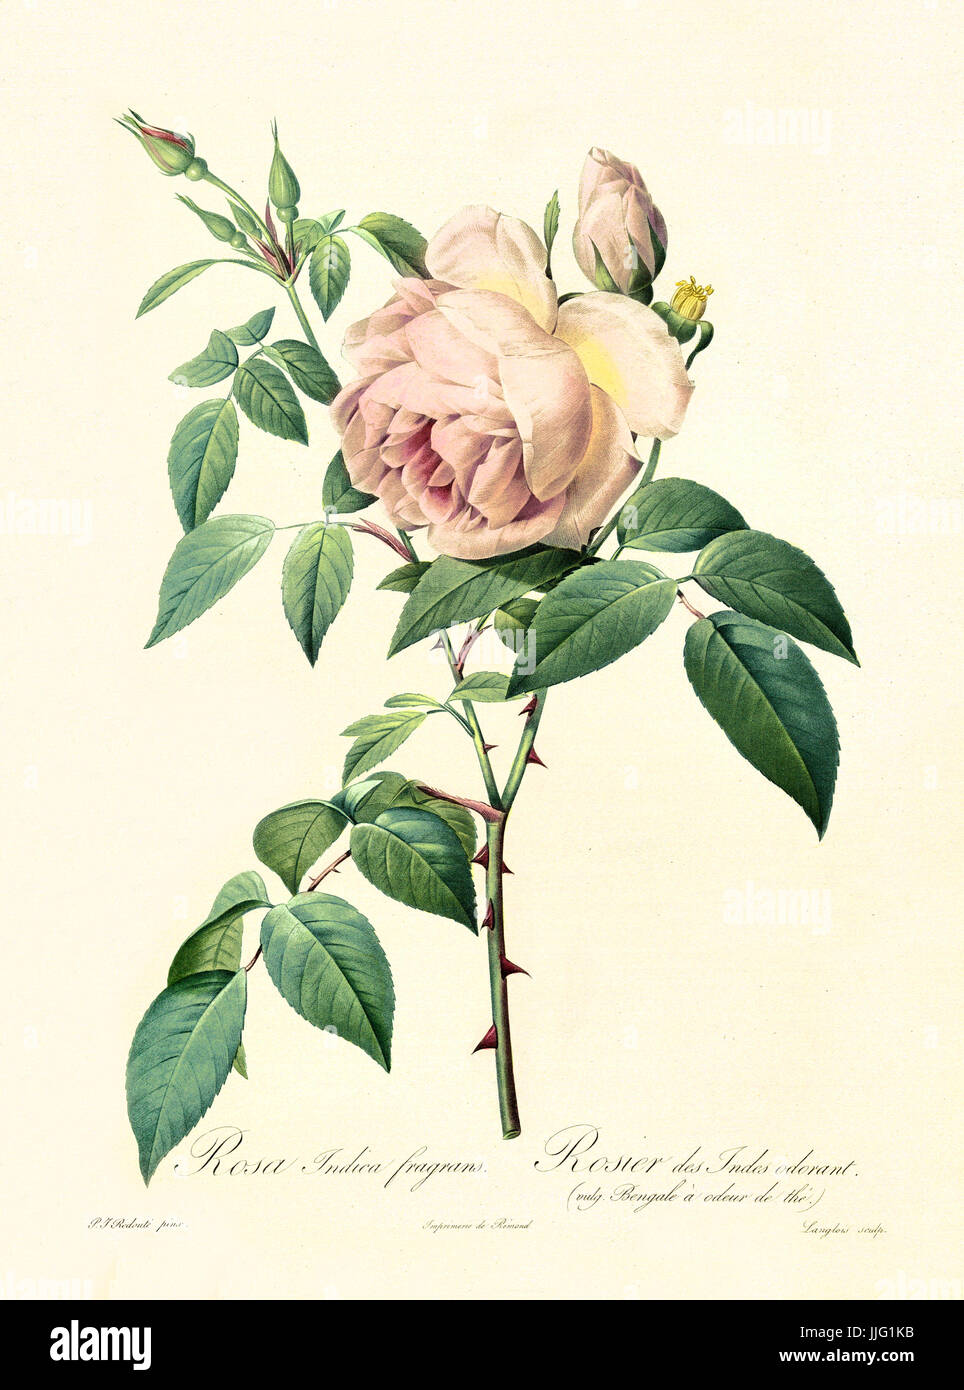 Vecchia illustrazione di rosa indica fragrans. Creato da P. R. Redoute, pubblicato su Les Roses, Imp. Firmin Didot, Parigi, 1817-24 Foto Stock